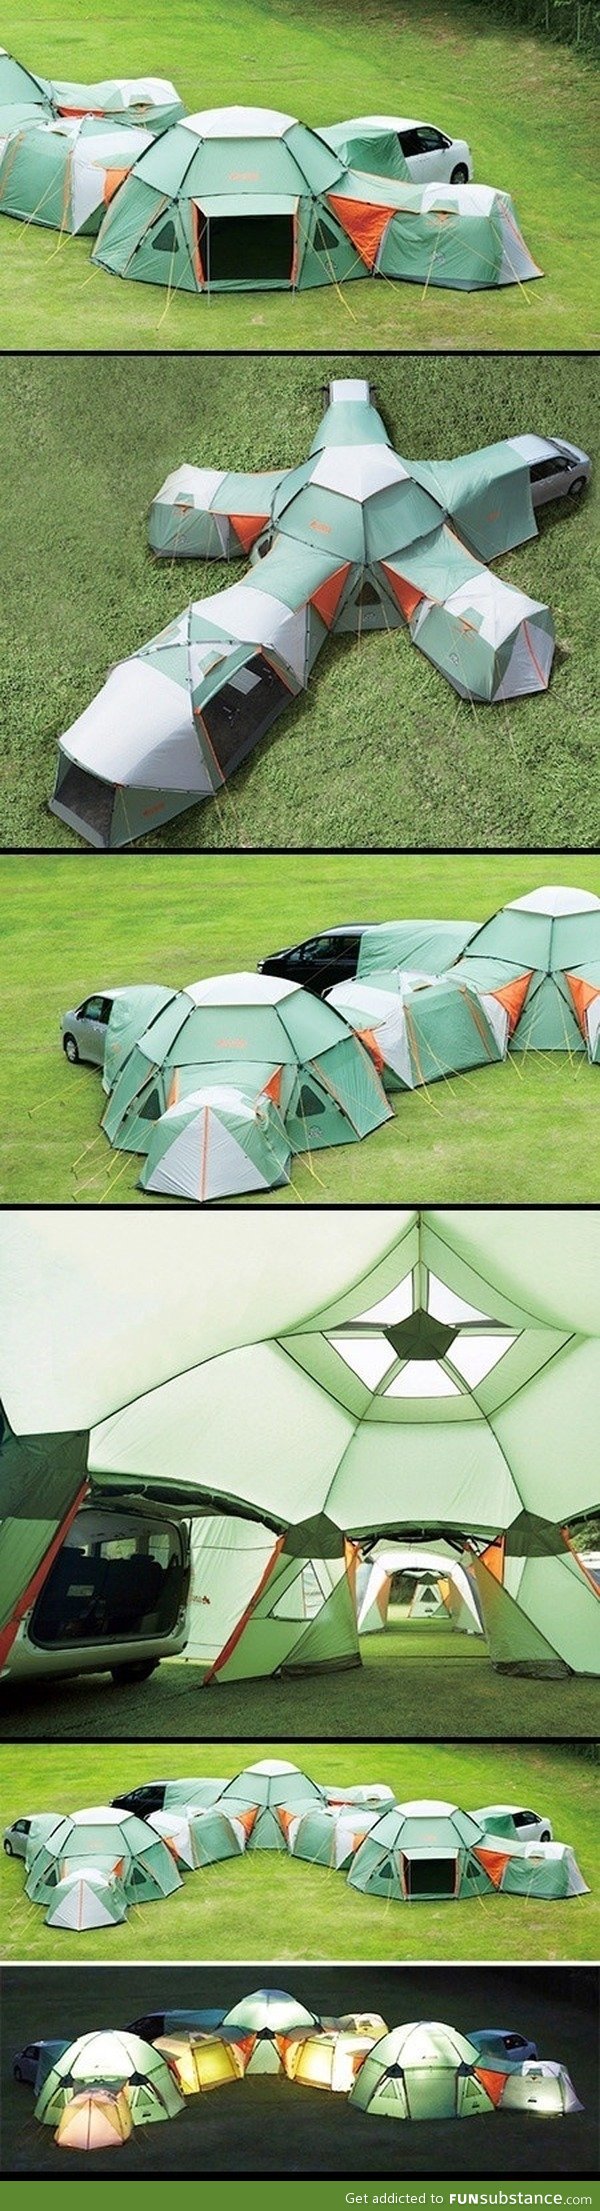 Coolest tent